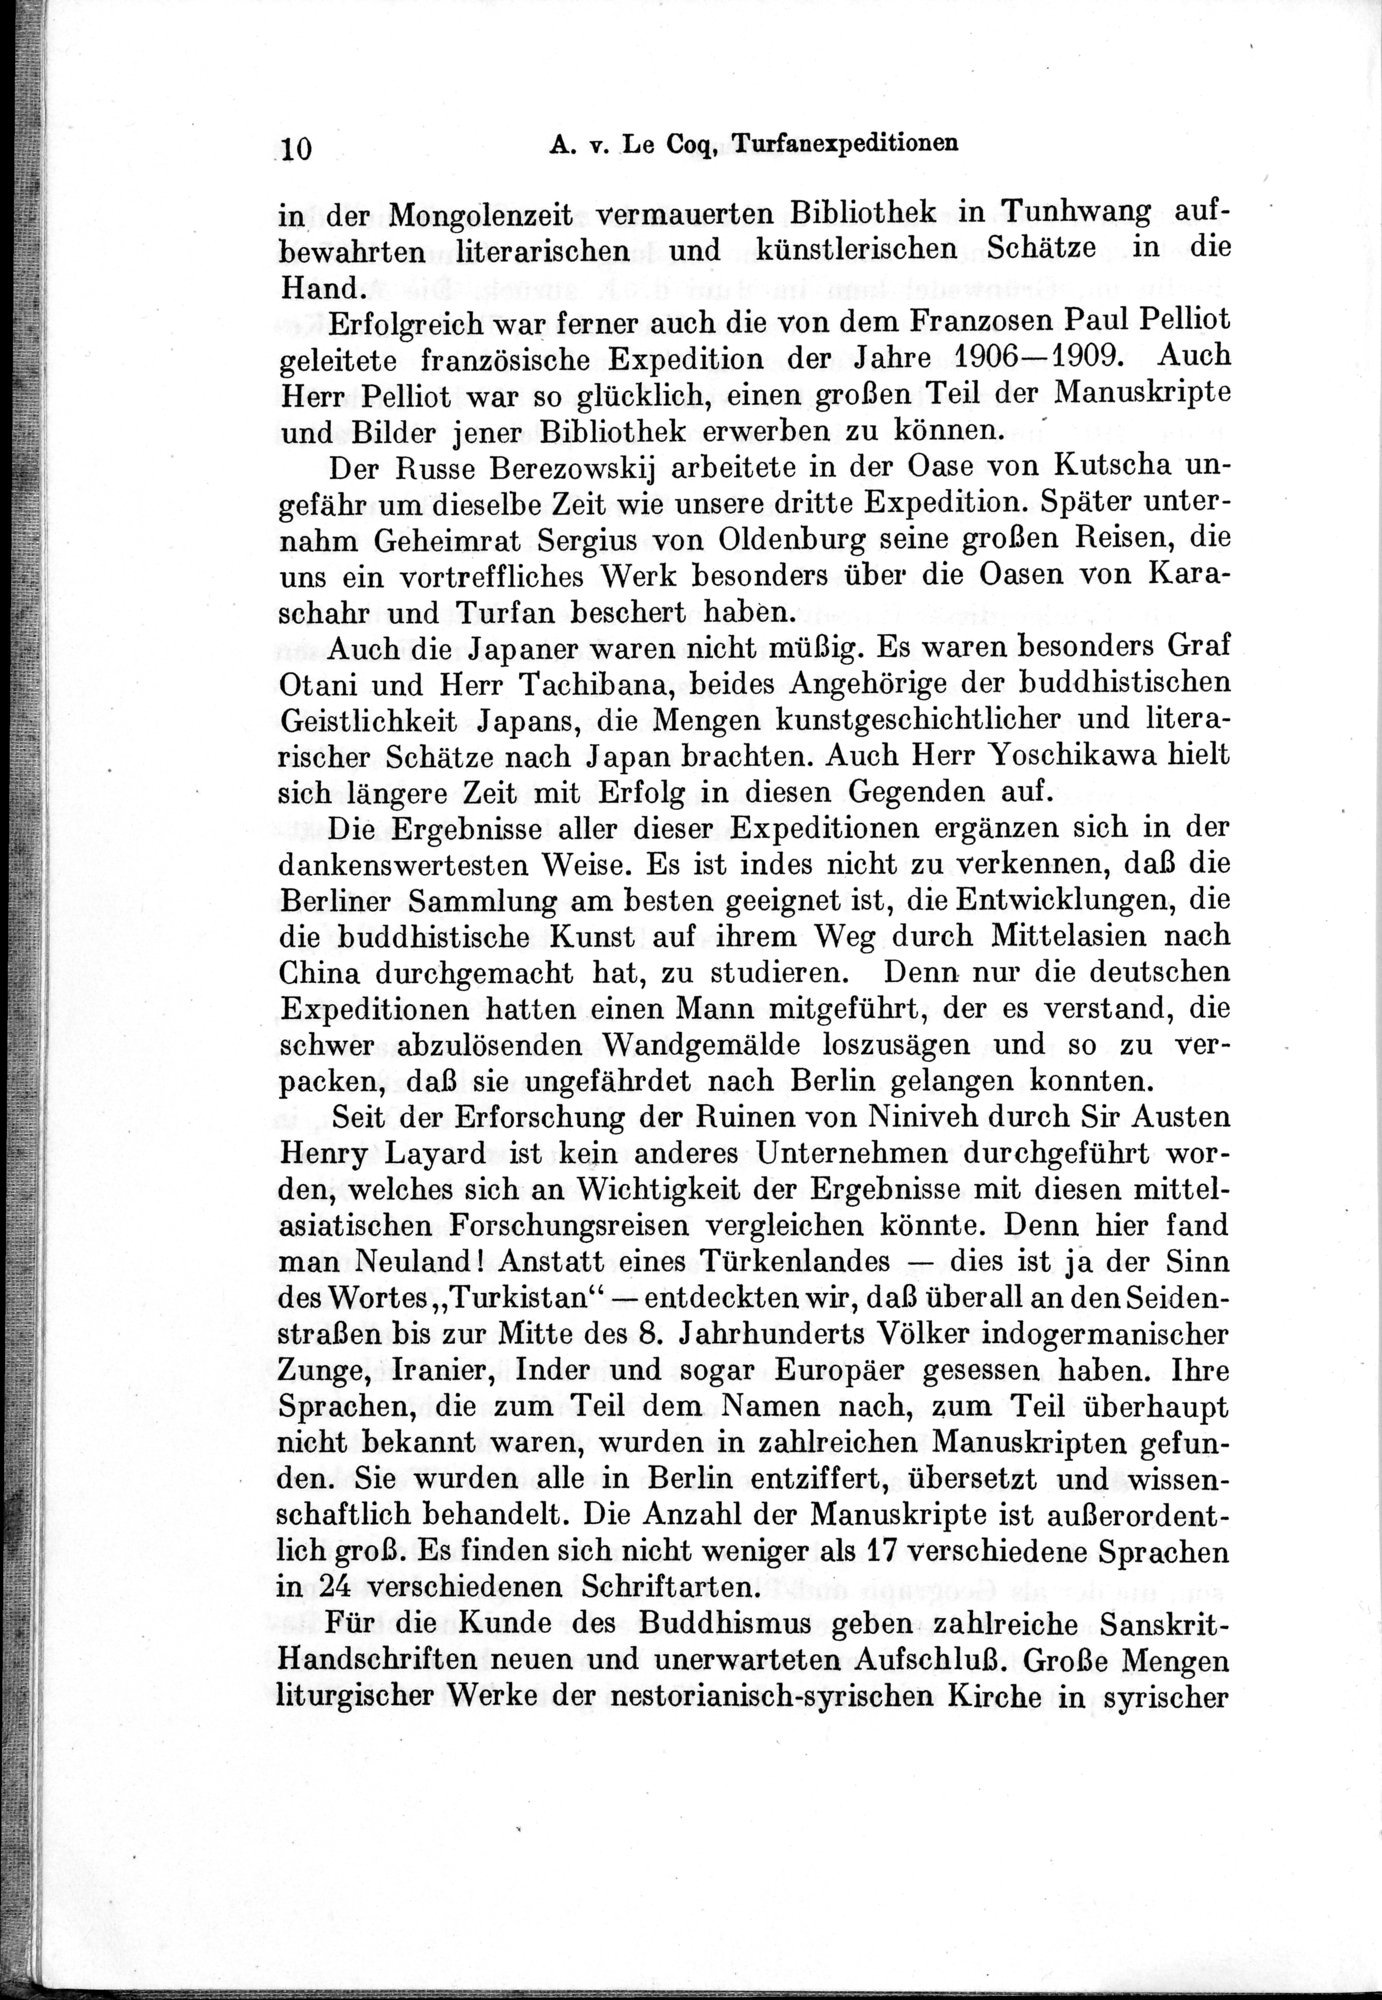 Auf Hellas Spuren in Ostturkistan : vol.1 / Page 26 (Grayscale High Resolution Image)